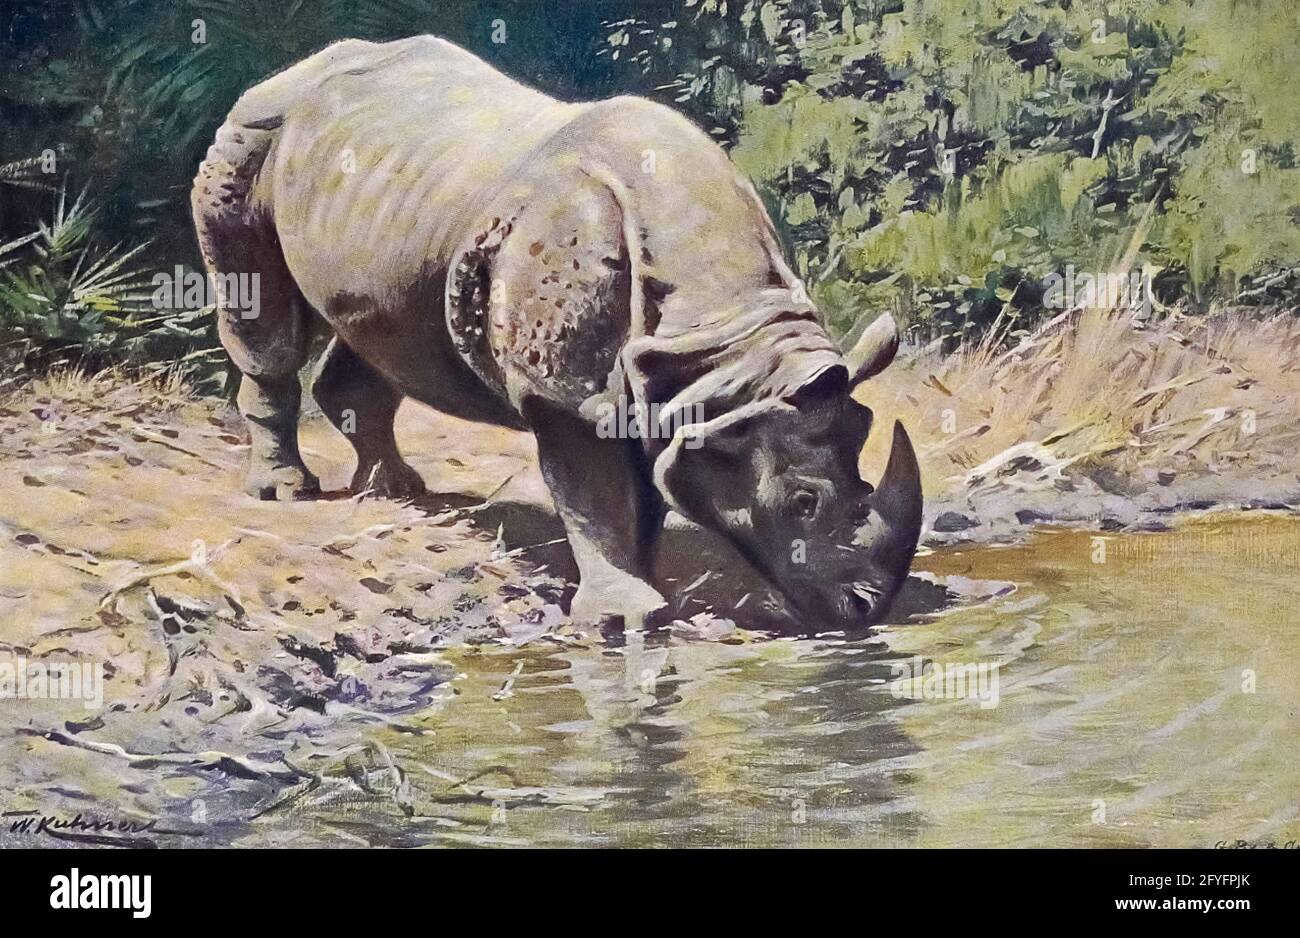 Le rhinocéros indien (Rhinoceros unicornis), également appelé rhinocéros indien, est un grand rhinocéros à cornes ou un grand rhinocéros indien, est une espèce de rhinocéros originaire de l'Inde subcontinent.from le livre « Portrait d'animaux » de Richard Lydekker, et illustré par Wilhelm Kuhnert, publié à Londres par Frederick Warne & Co. En 1912 Banque D'Images